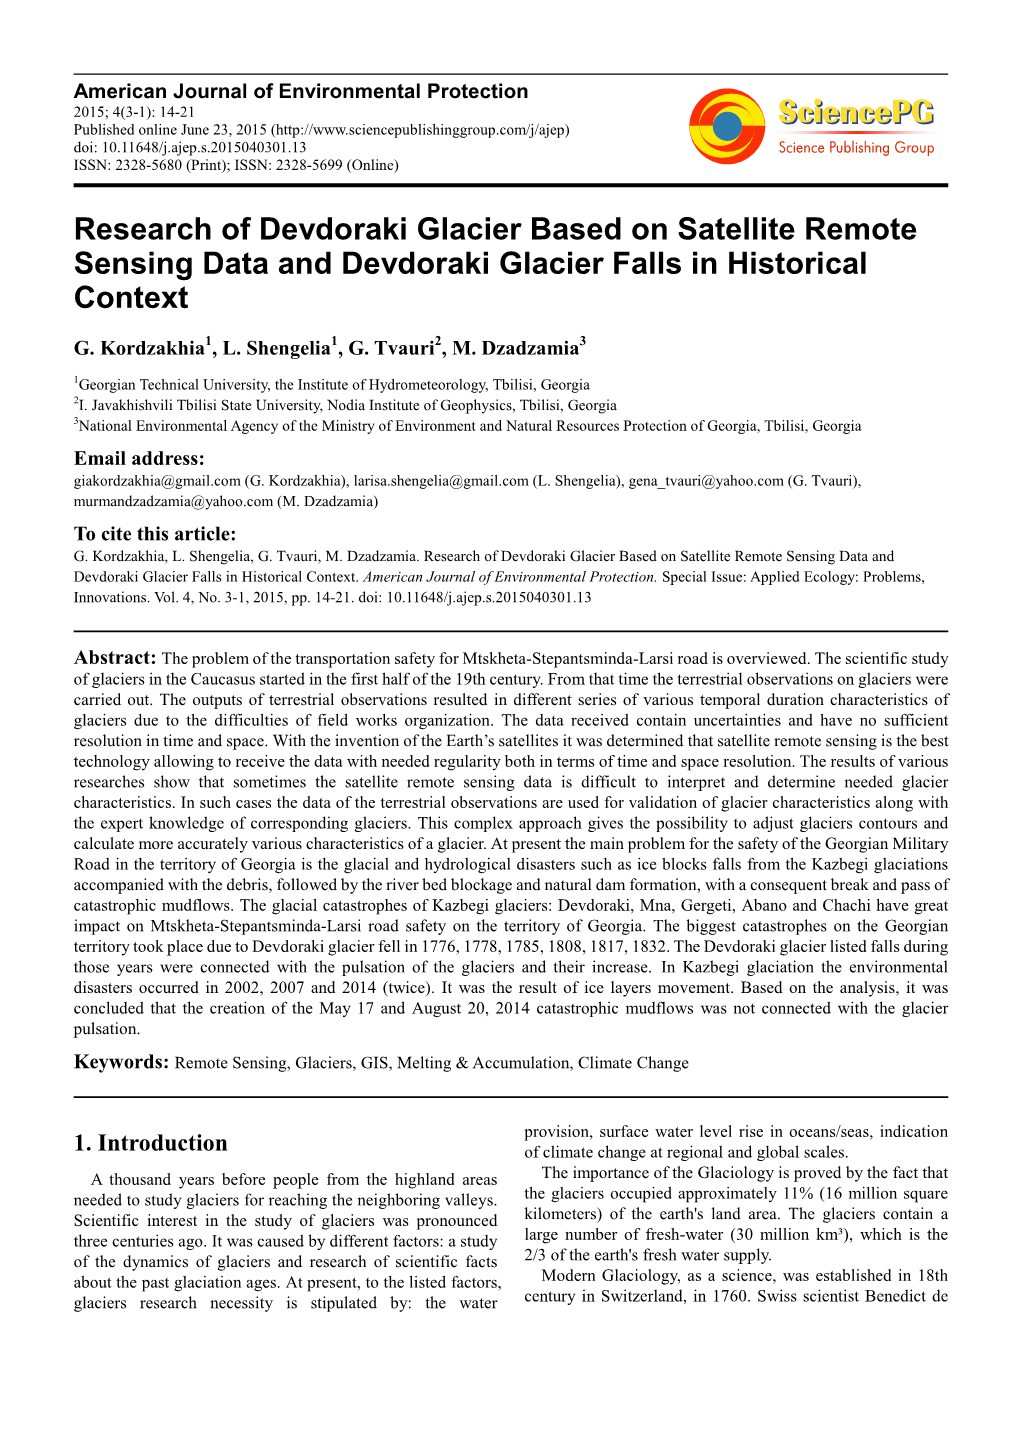 Research of Devdoraki Glacier Based on Satellite Remote Sensing Data and Devdoraki Glacier Falls in Historical Context